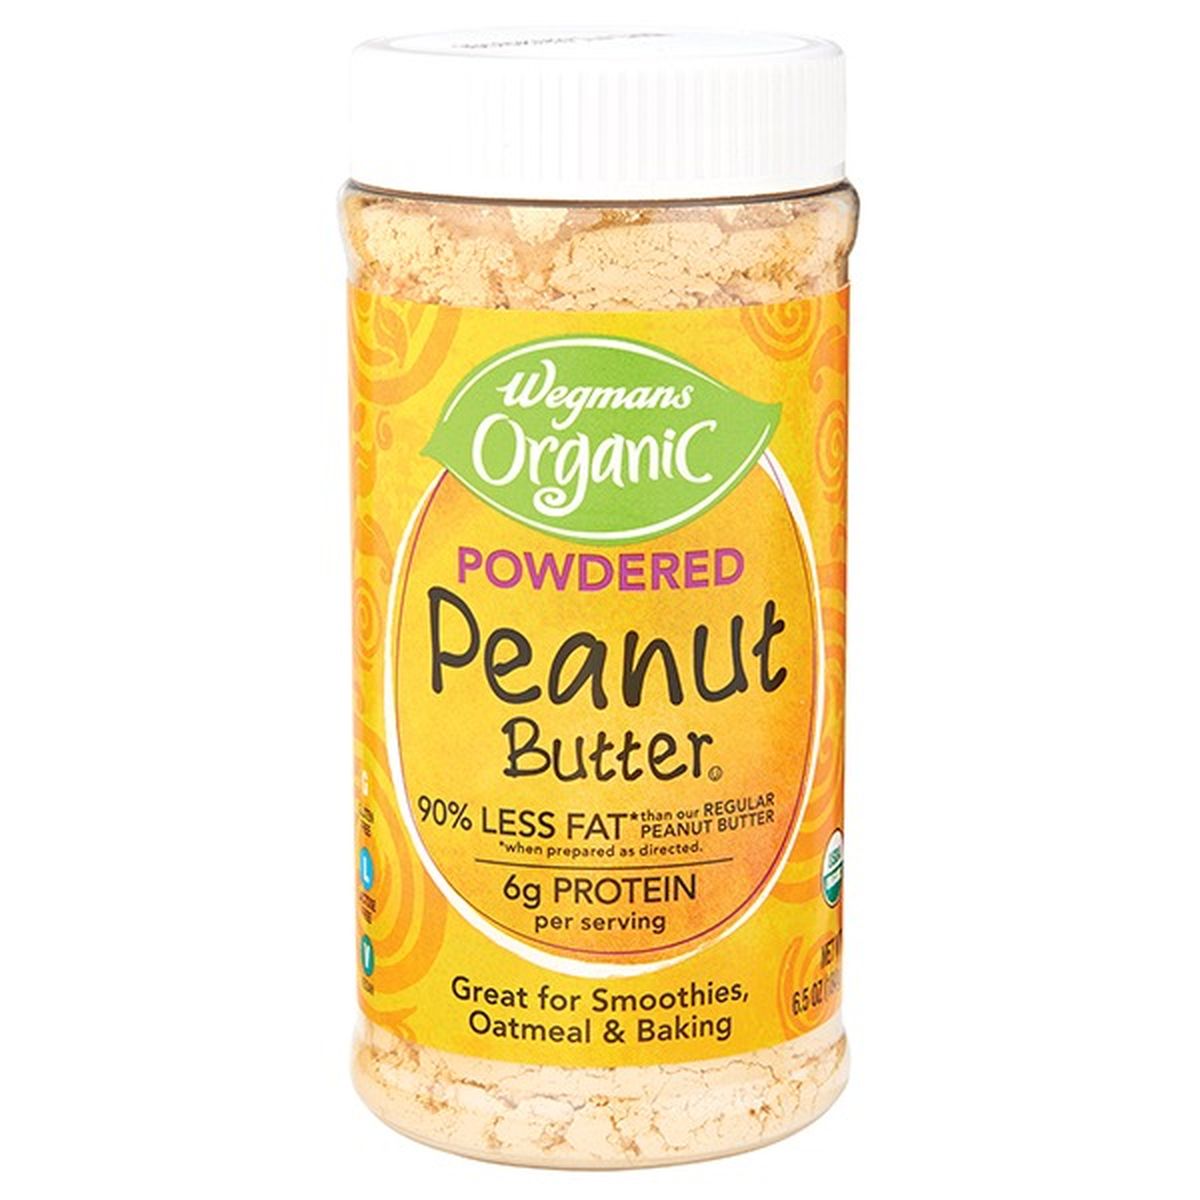 Calories in Wegmans Organic Powdered Peanut Butter